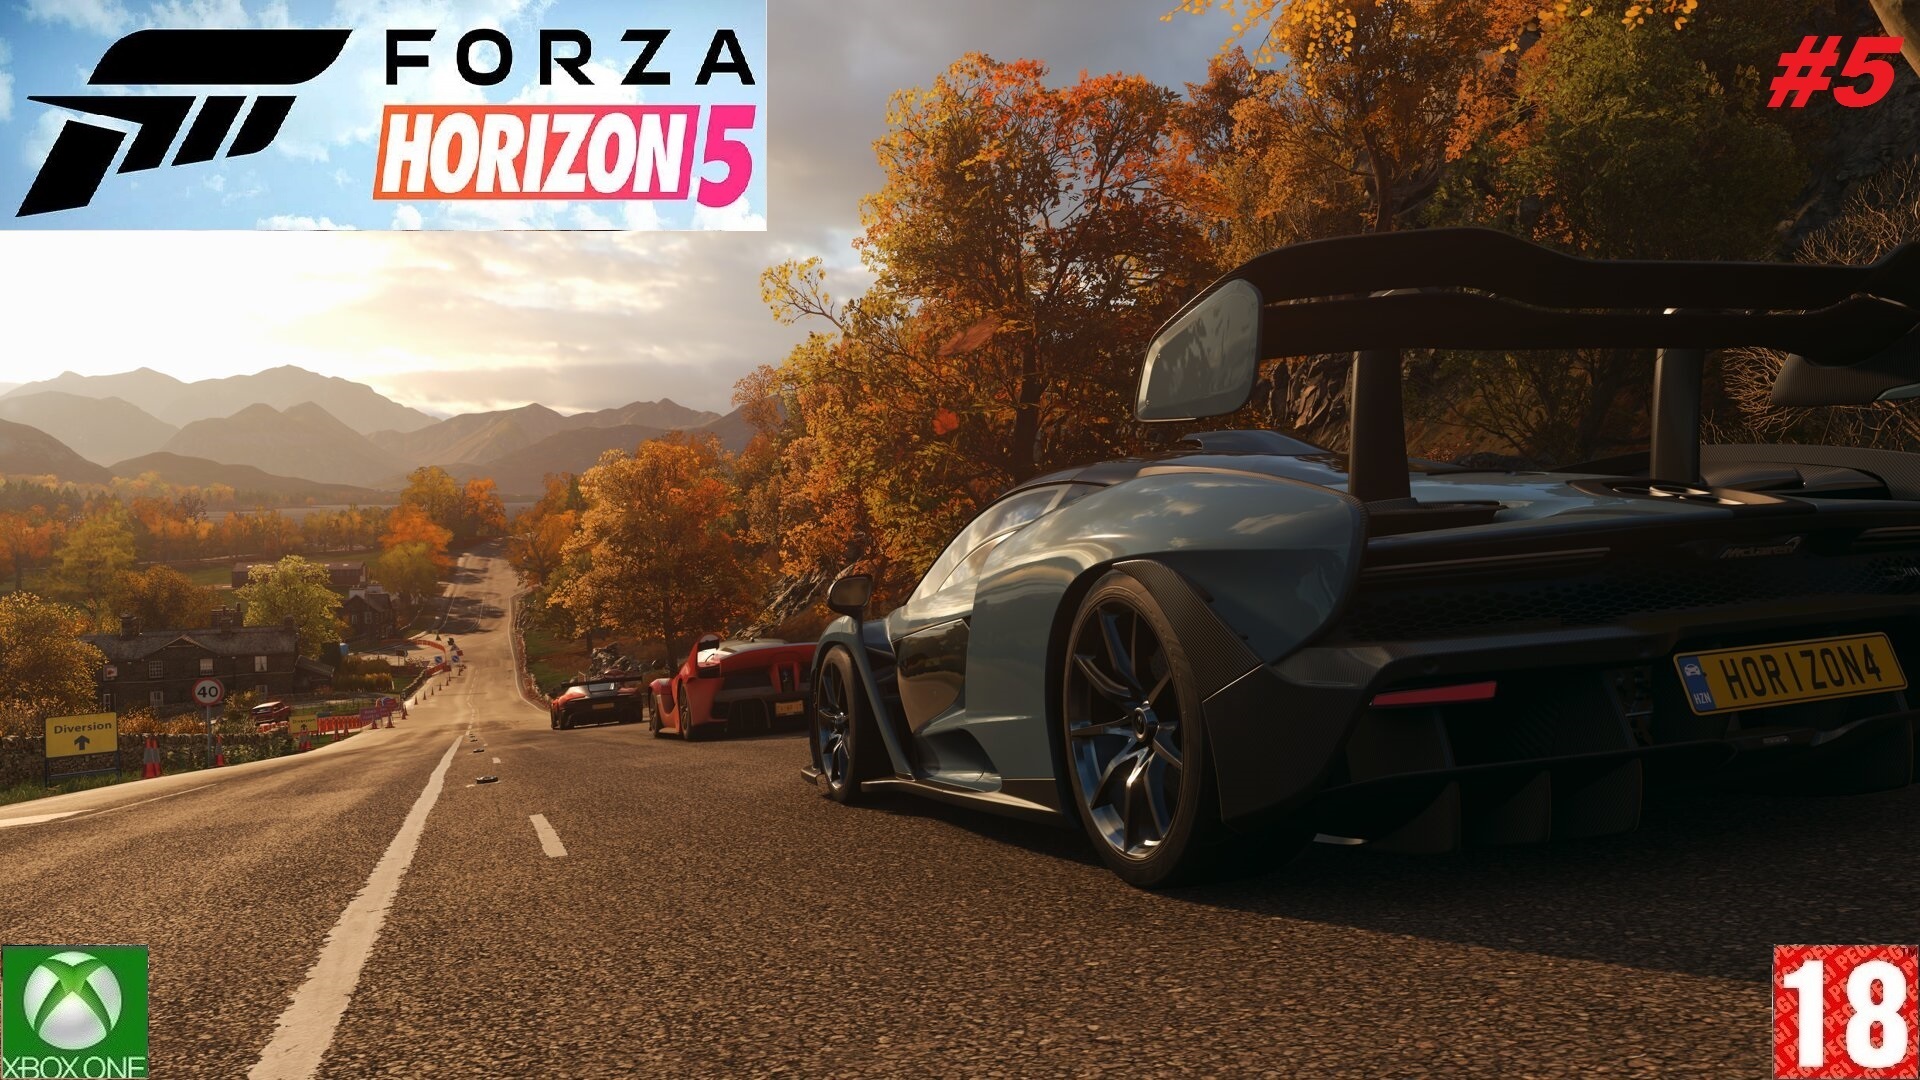 Forza Horizon 5 (Xbox One) - Прохождение - #5, Добро пожаловать в Мексику. (без комментариев)